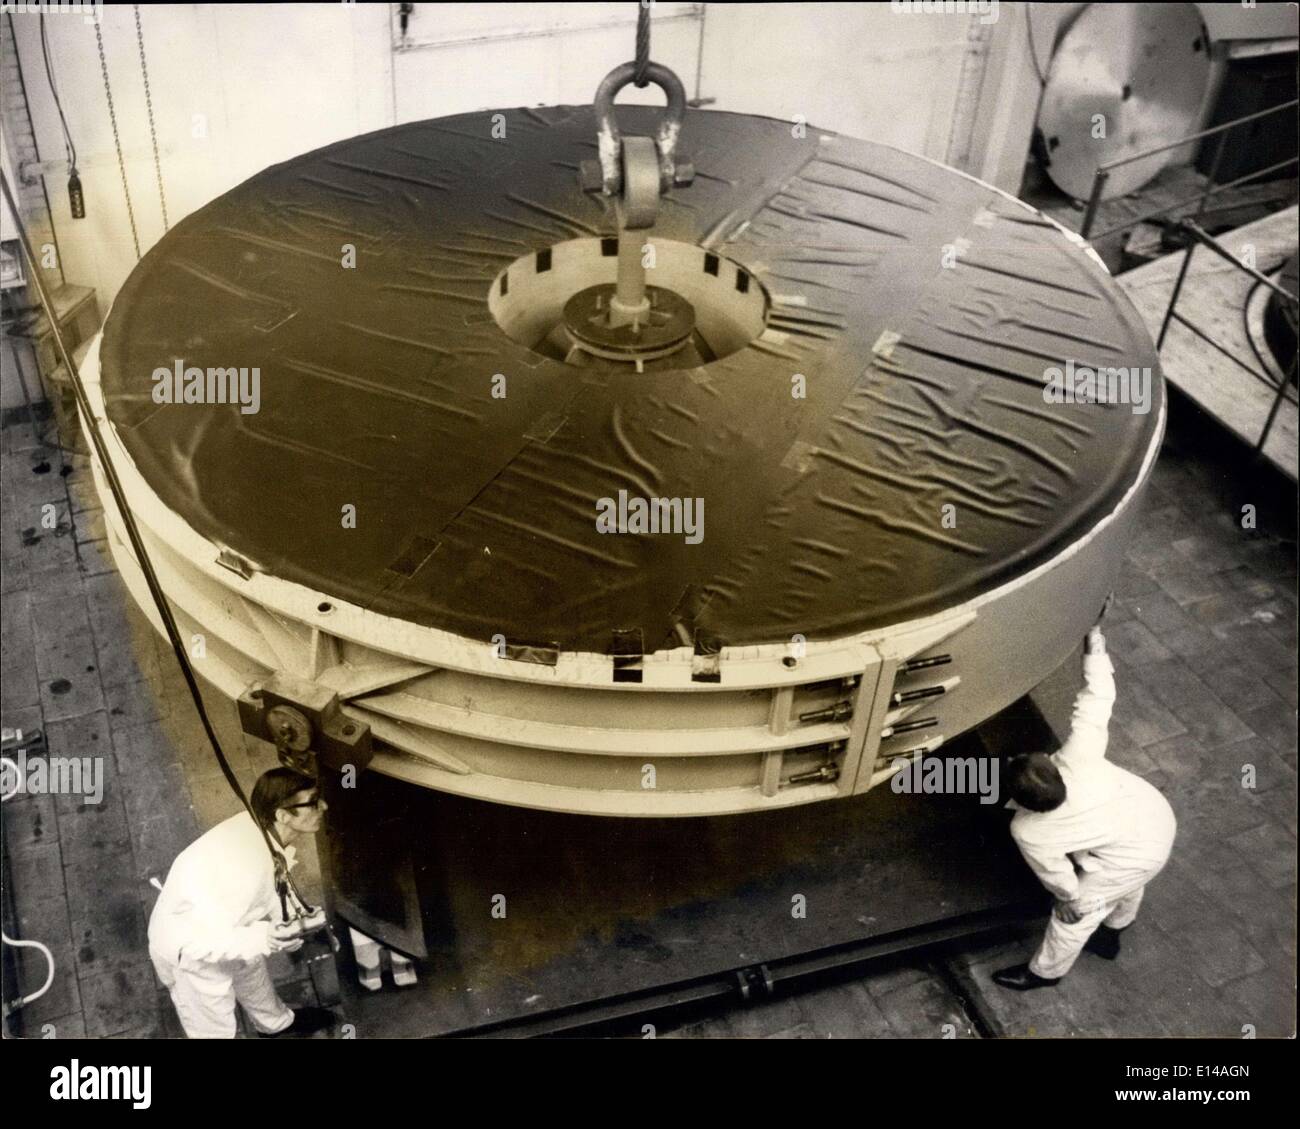 17 avril 2012 - miroir de télescope de 20 tonnes d'une valeur de quart de  million arrive pour le polissage à Newcastle: Le plus grand morceau de  verre jamais importé au Royaume-Uni,